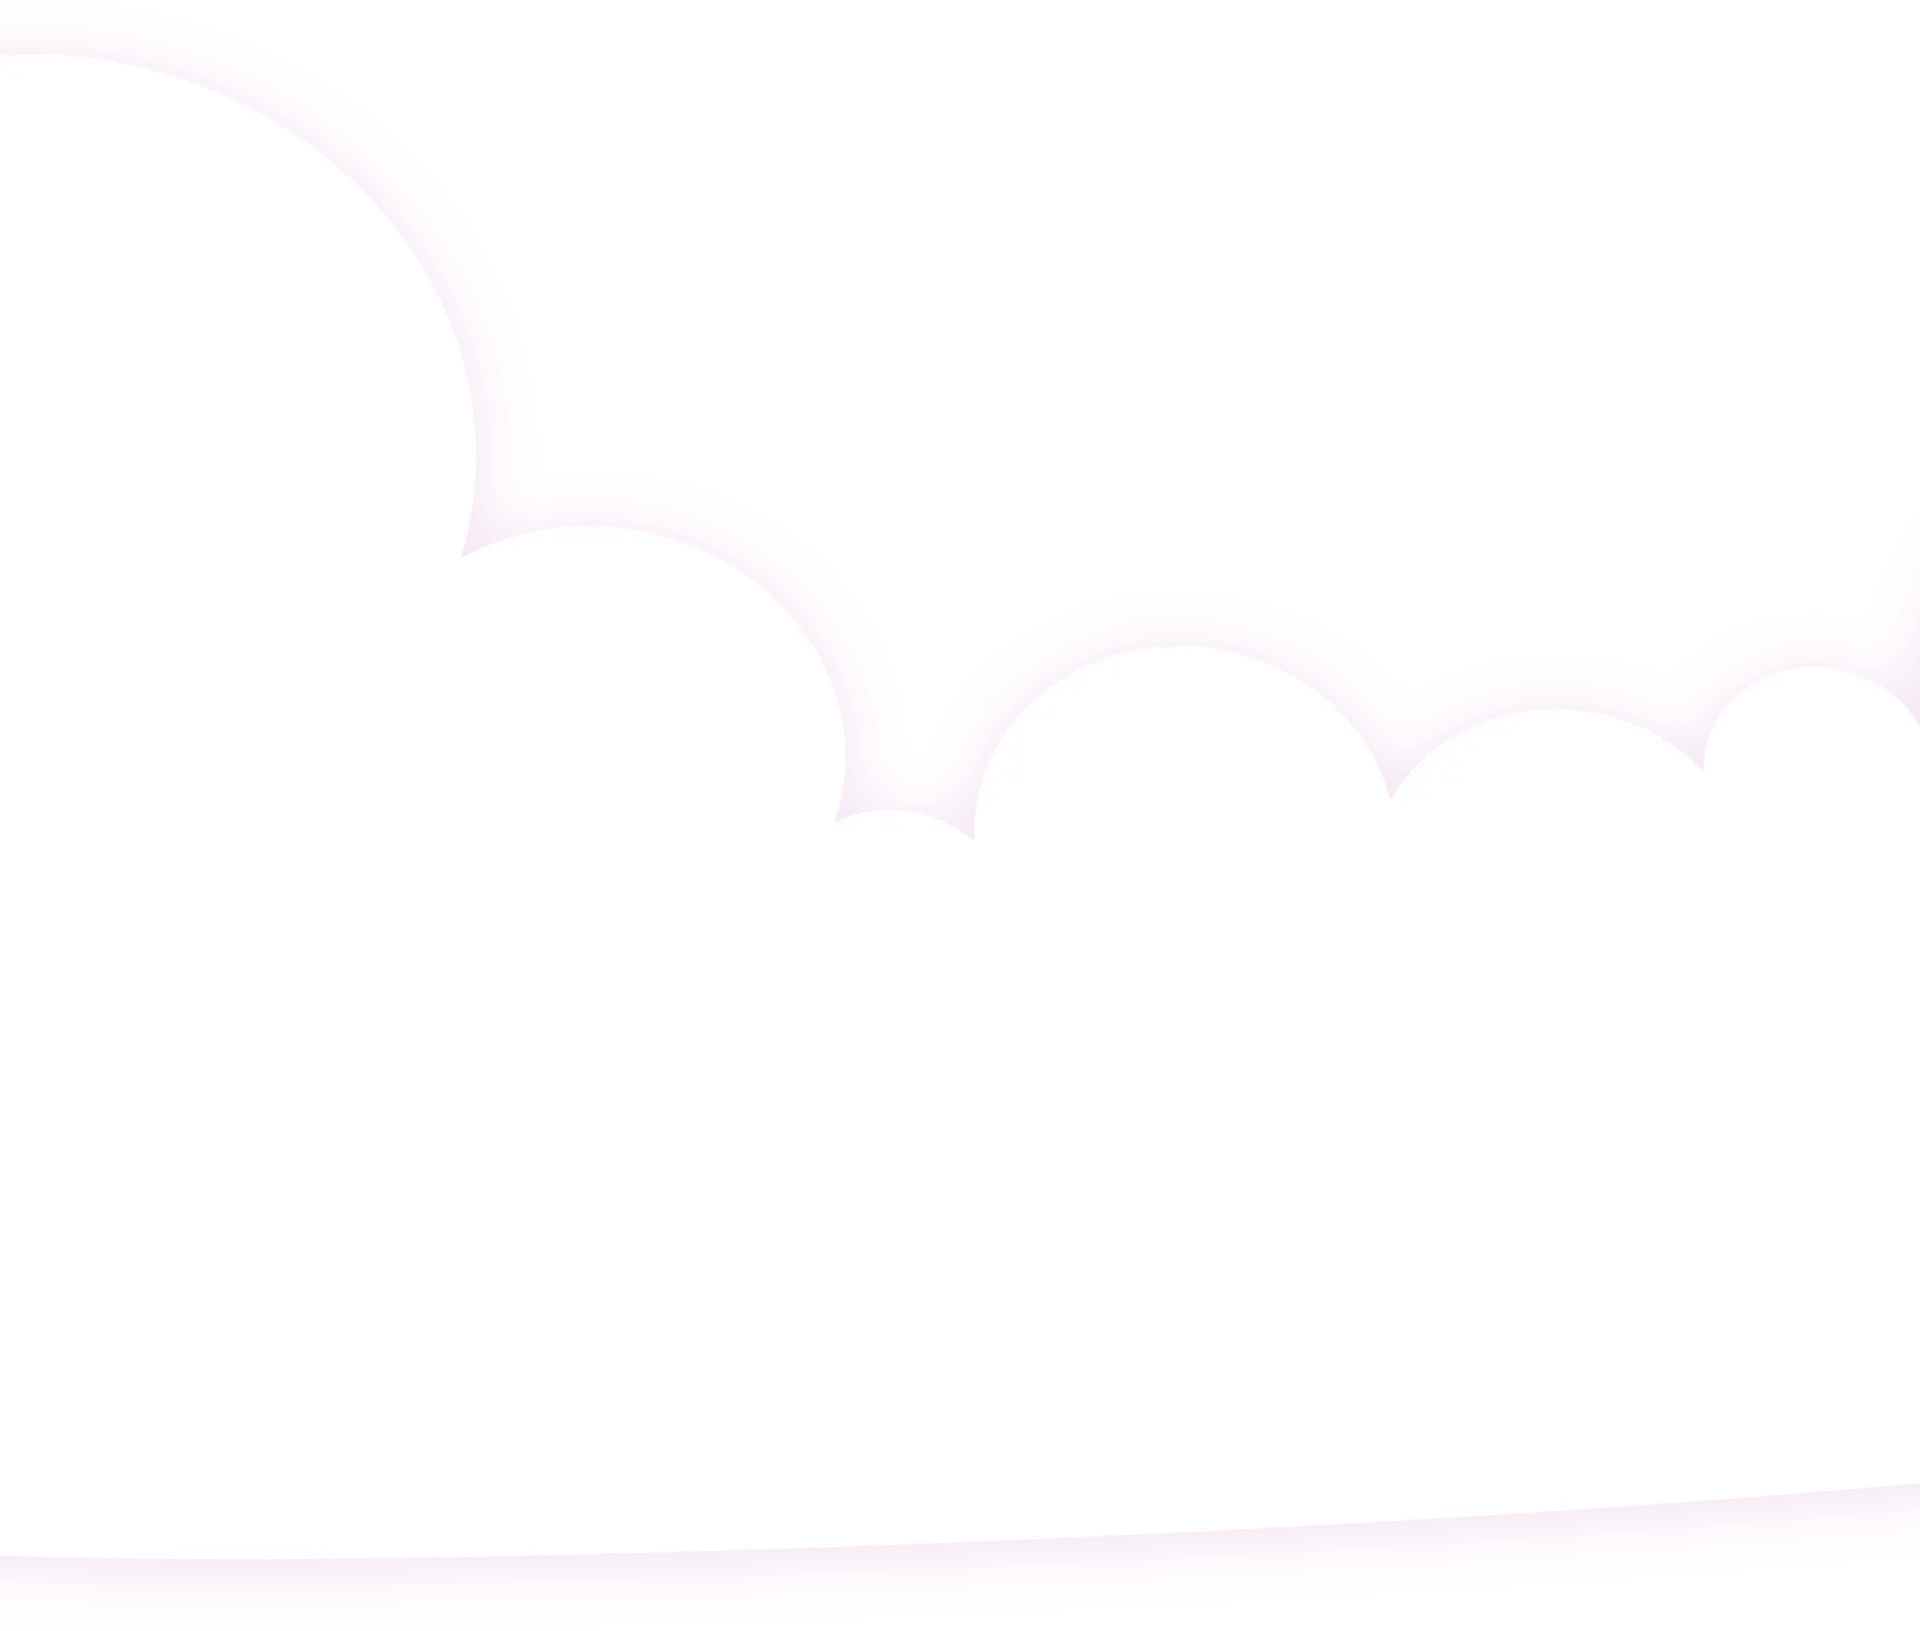  cloud